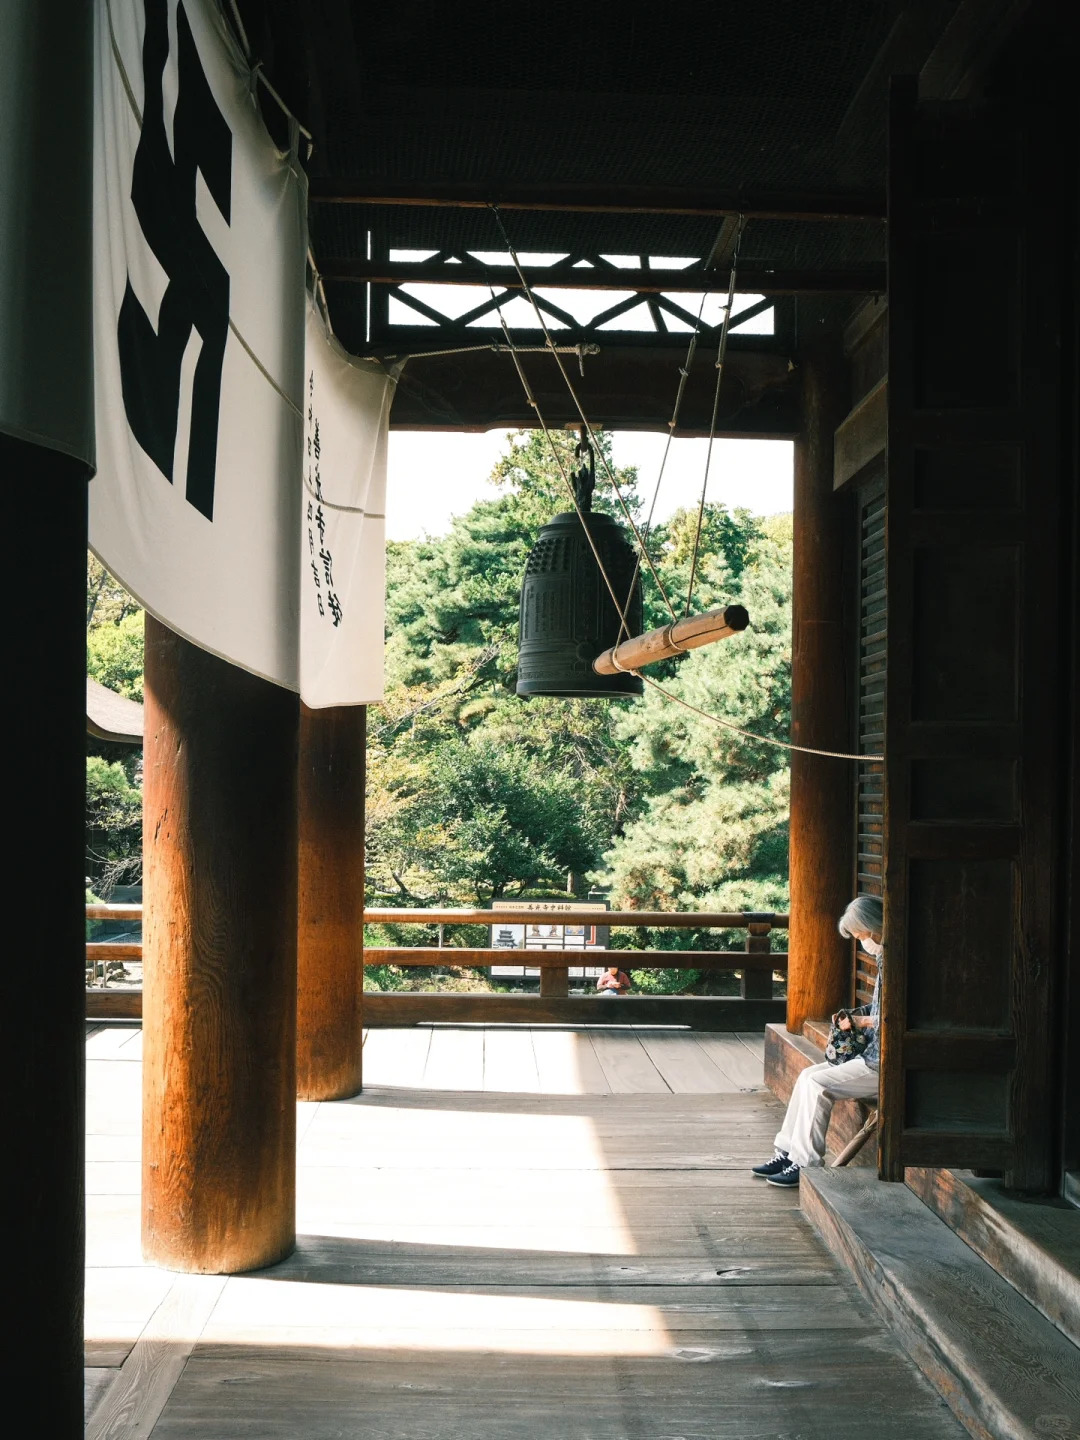 Zenko-ji  善光寺